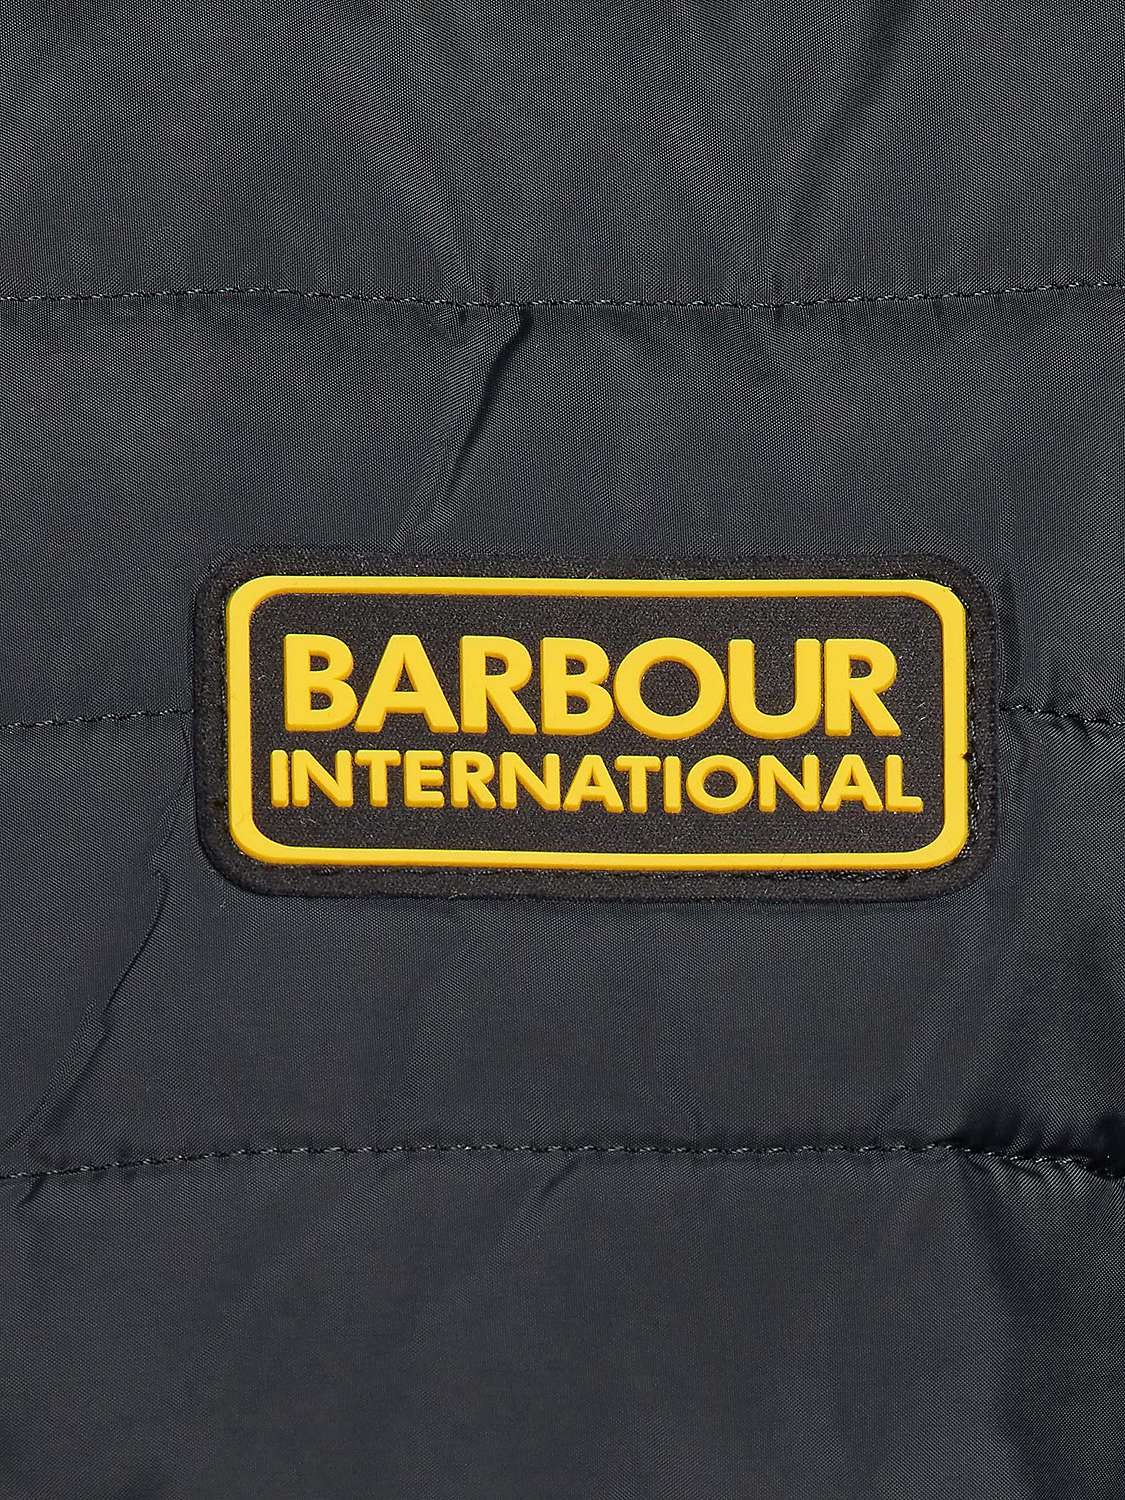 Buy Barbour International Baffle Quilted Jacket, Black Online at johnlewis.com